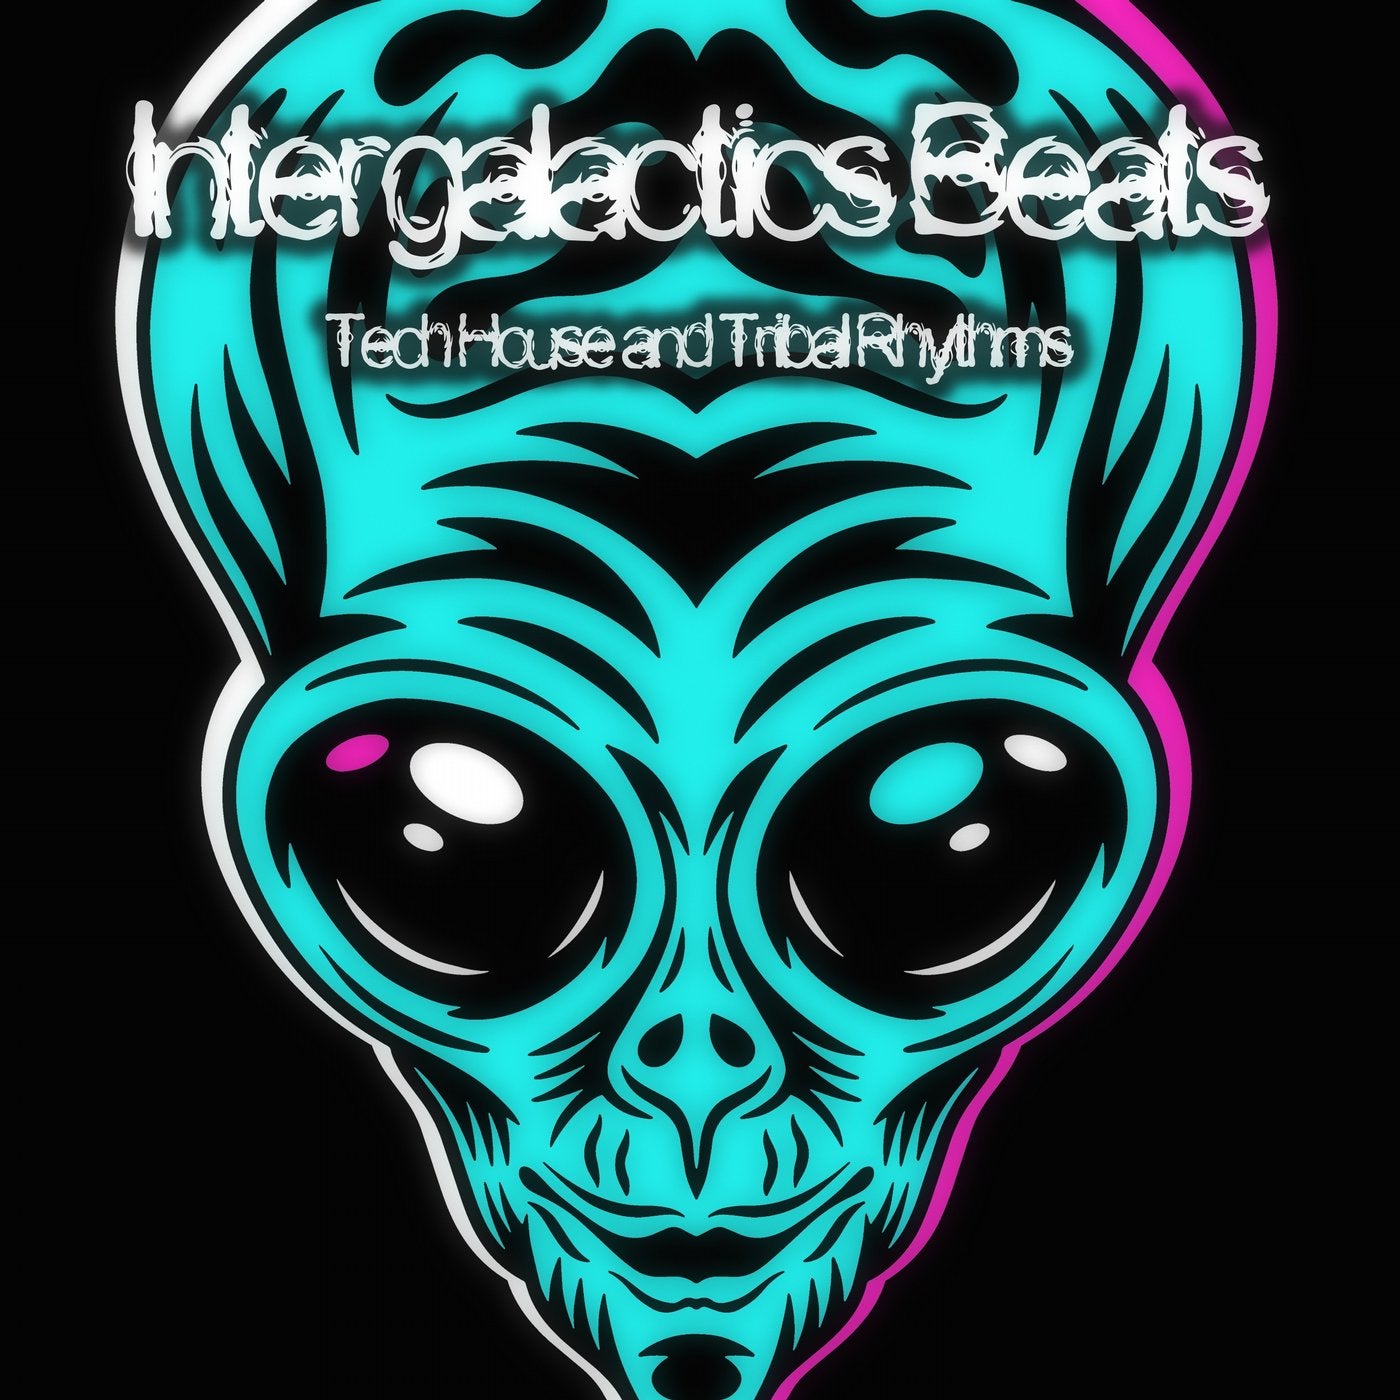 Intergalactics Beats (Tech House and Tribal Rhythms)